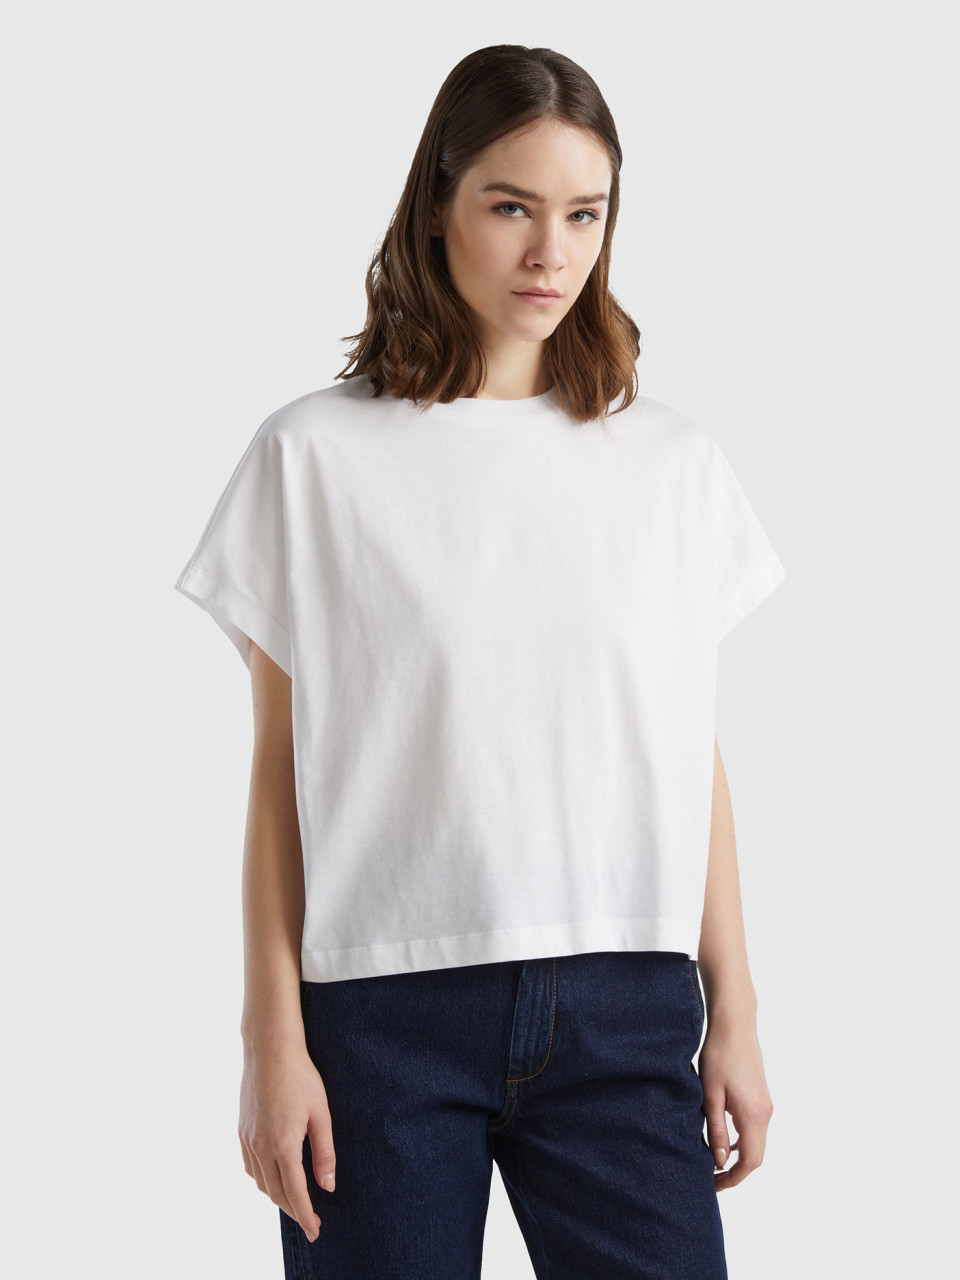 Benetton, Kimono Sleeve T-shirt, White, Women